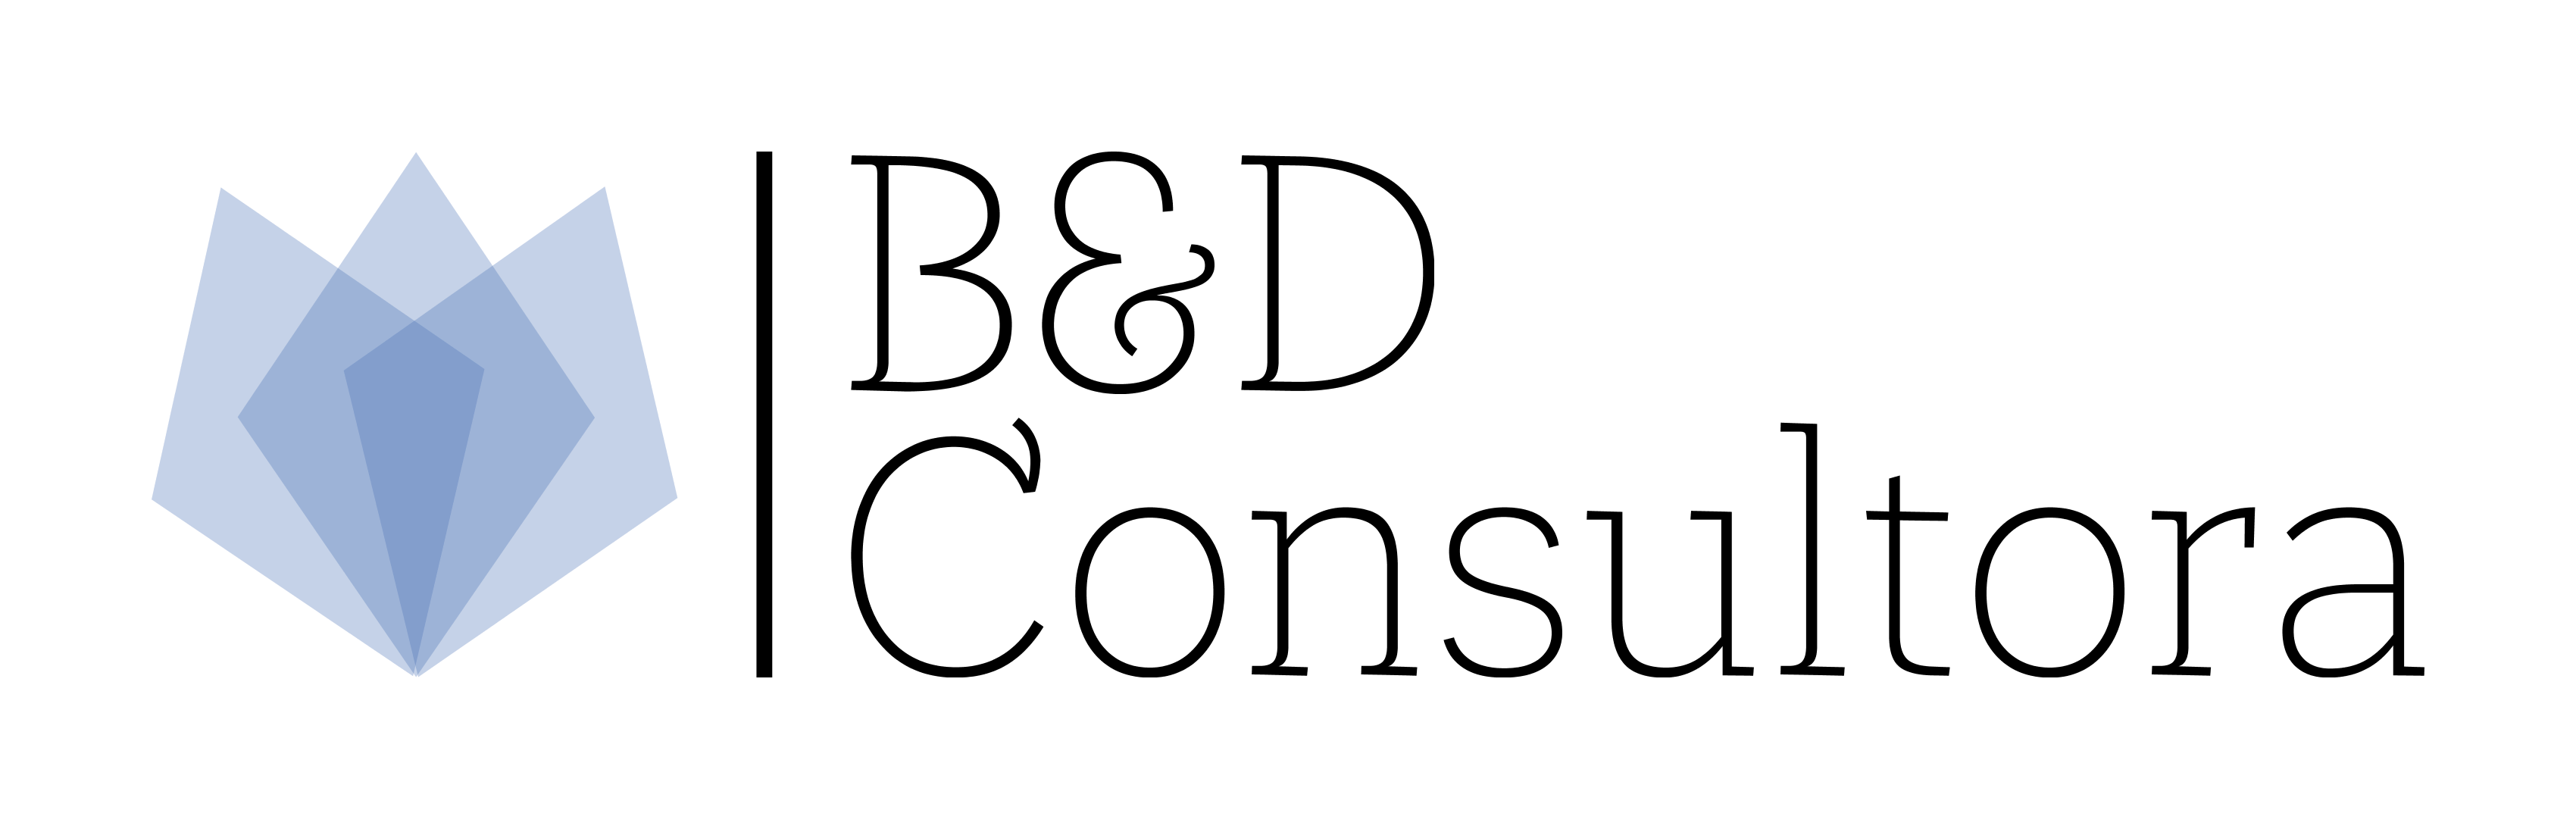 Logo B y D Consultora, Argentina、南米、South America